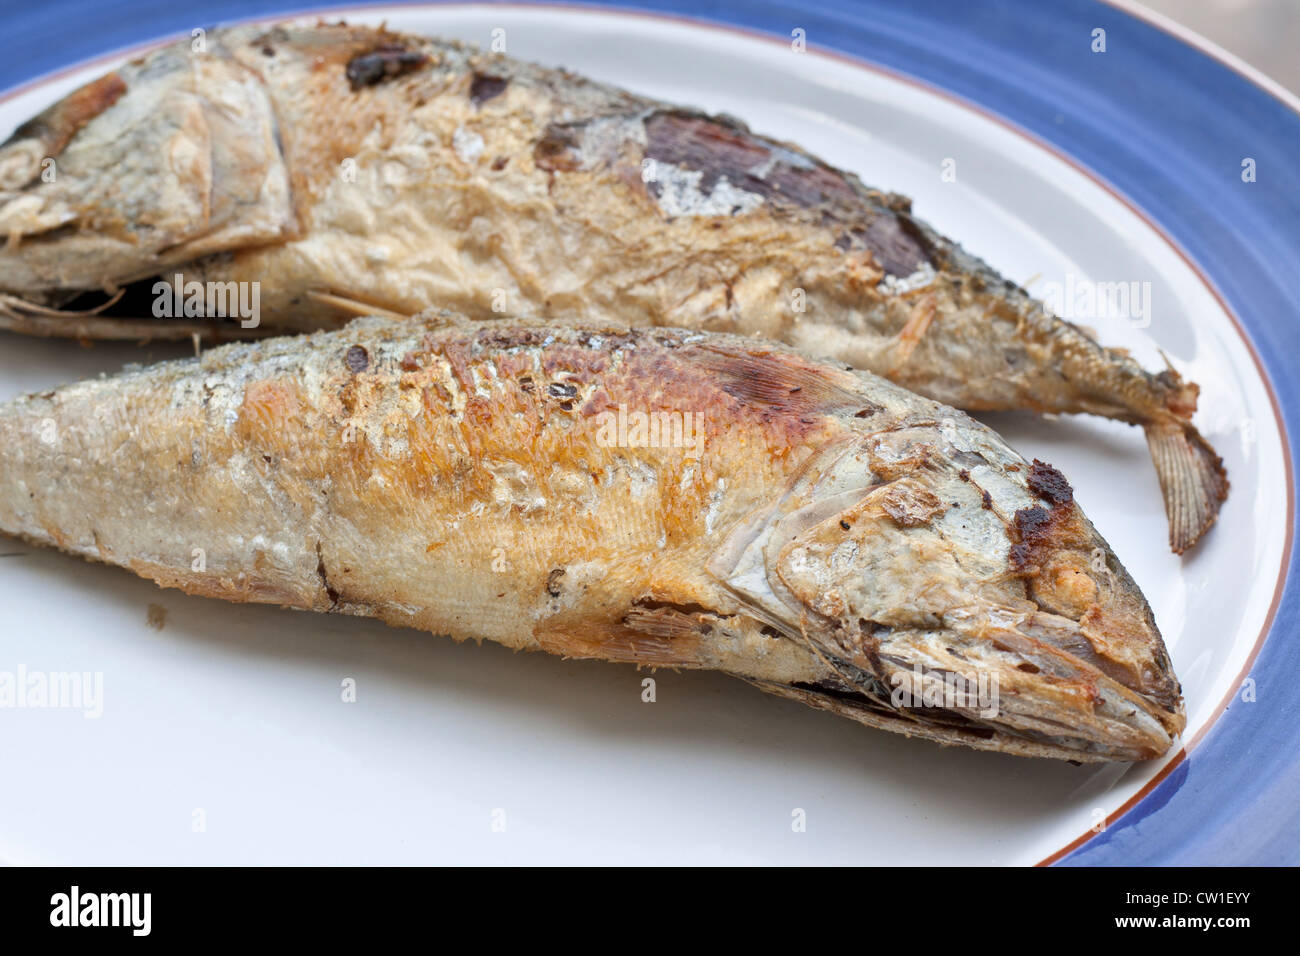 Makrele ist ein Grundnahrungsmittel der Thais. Stockfoto